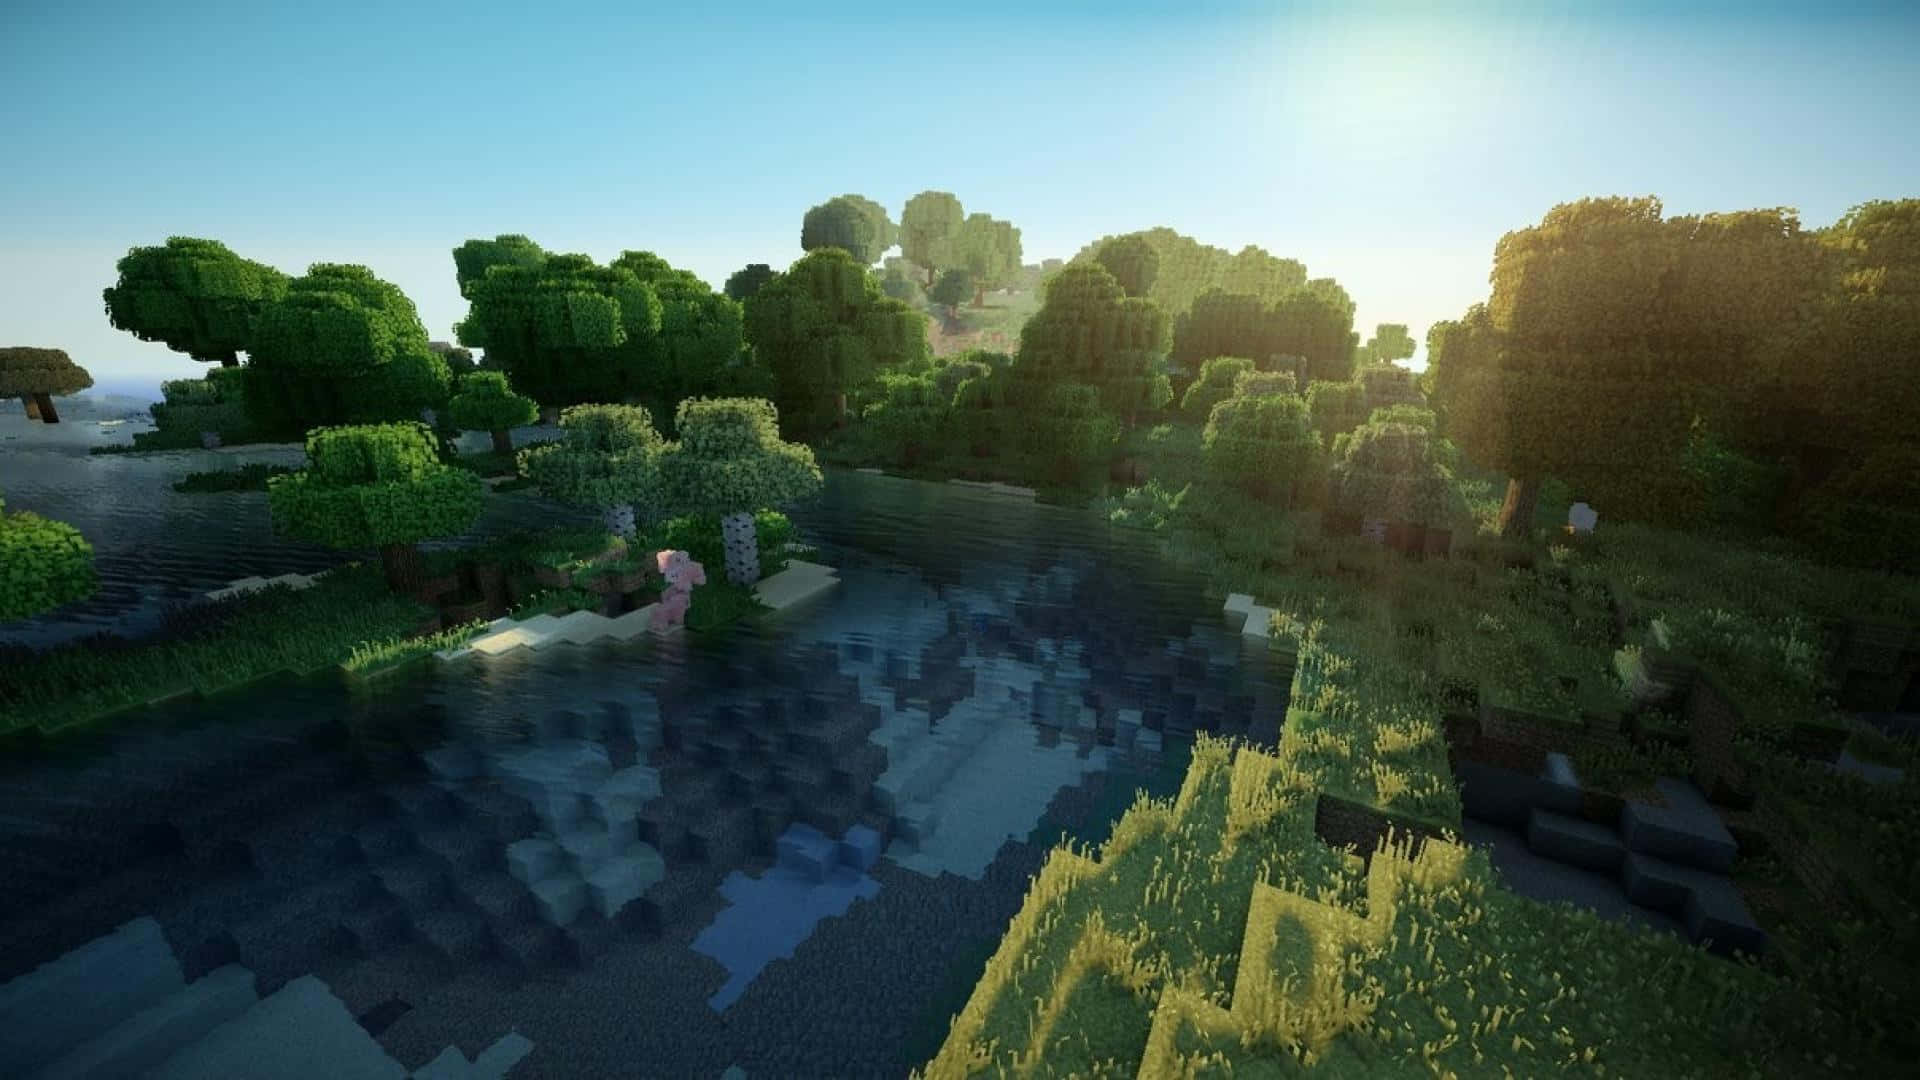 Findedeinen Weg Nach Hause, Indem Du Die Grasbewachsene Landschaft Von Minecraft Durchquerst. Wallpaper